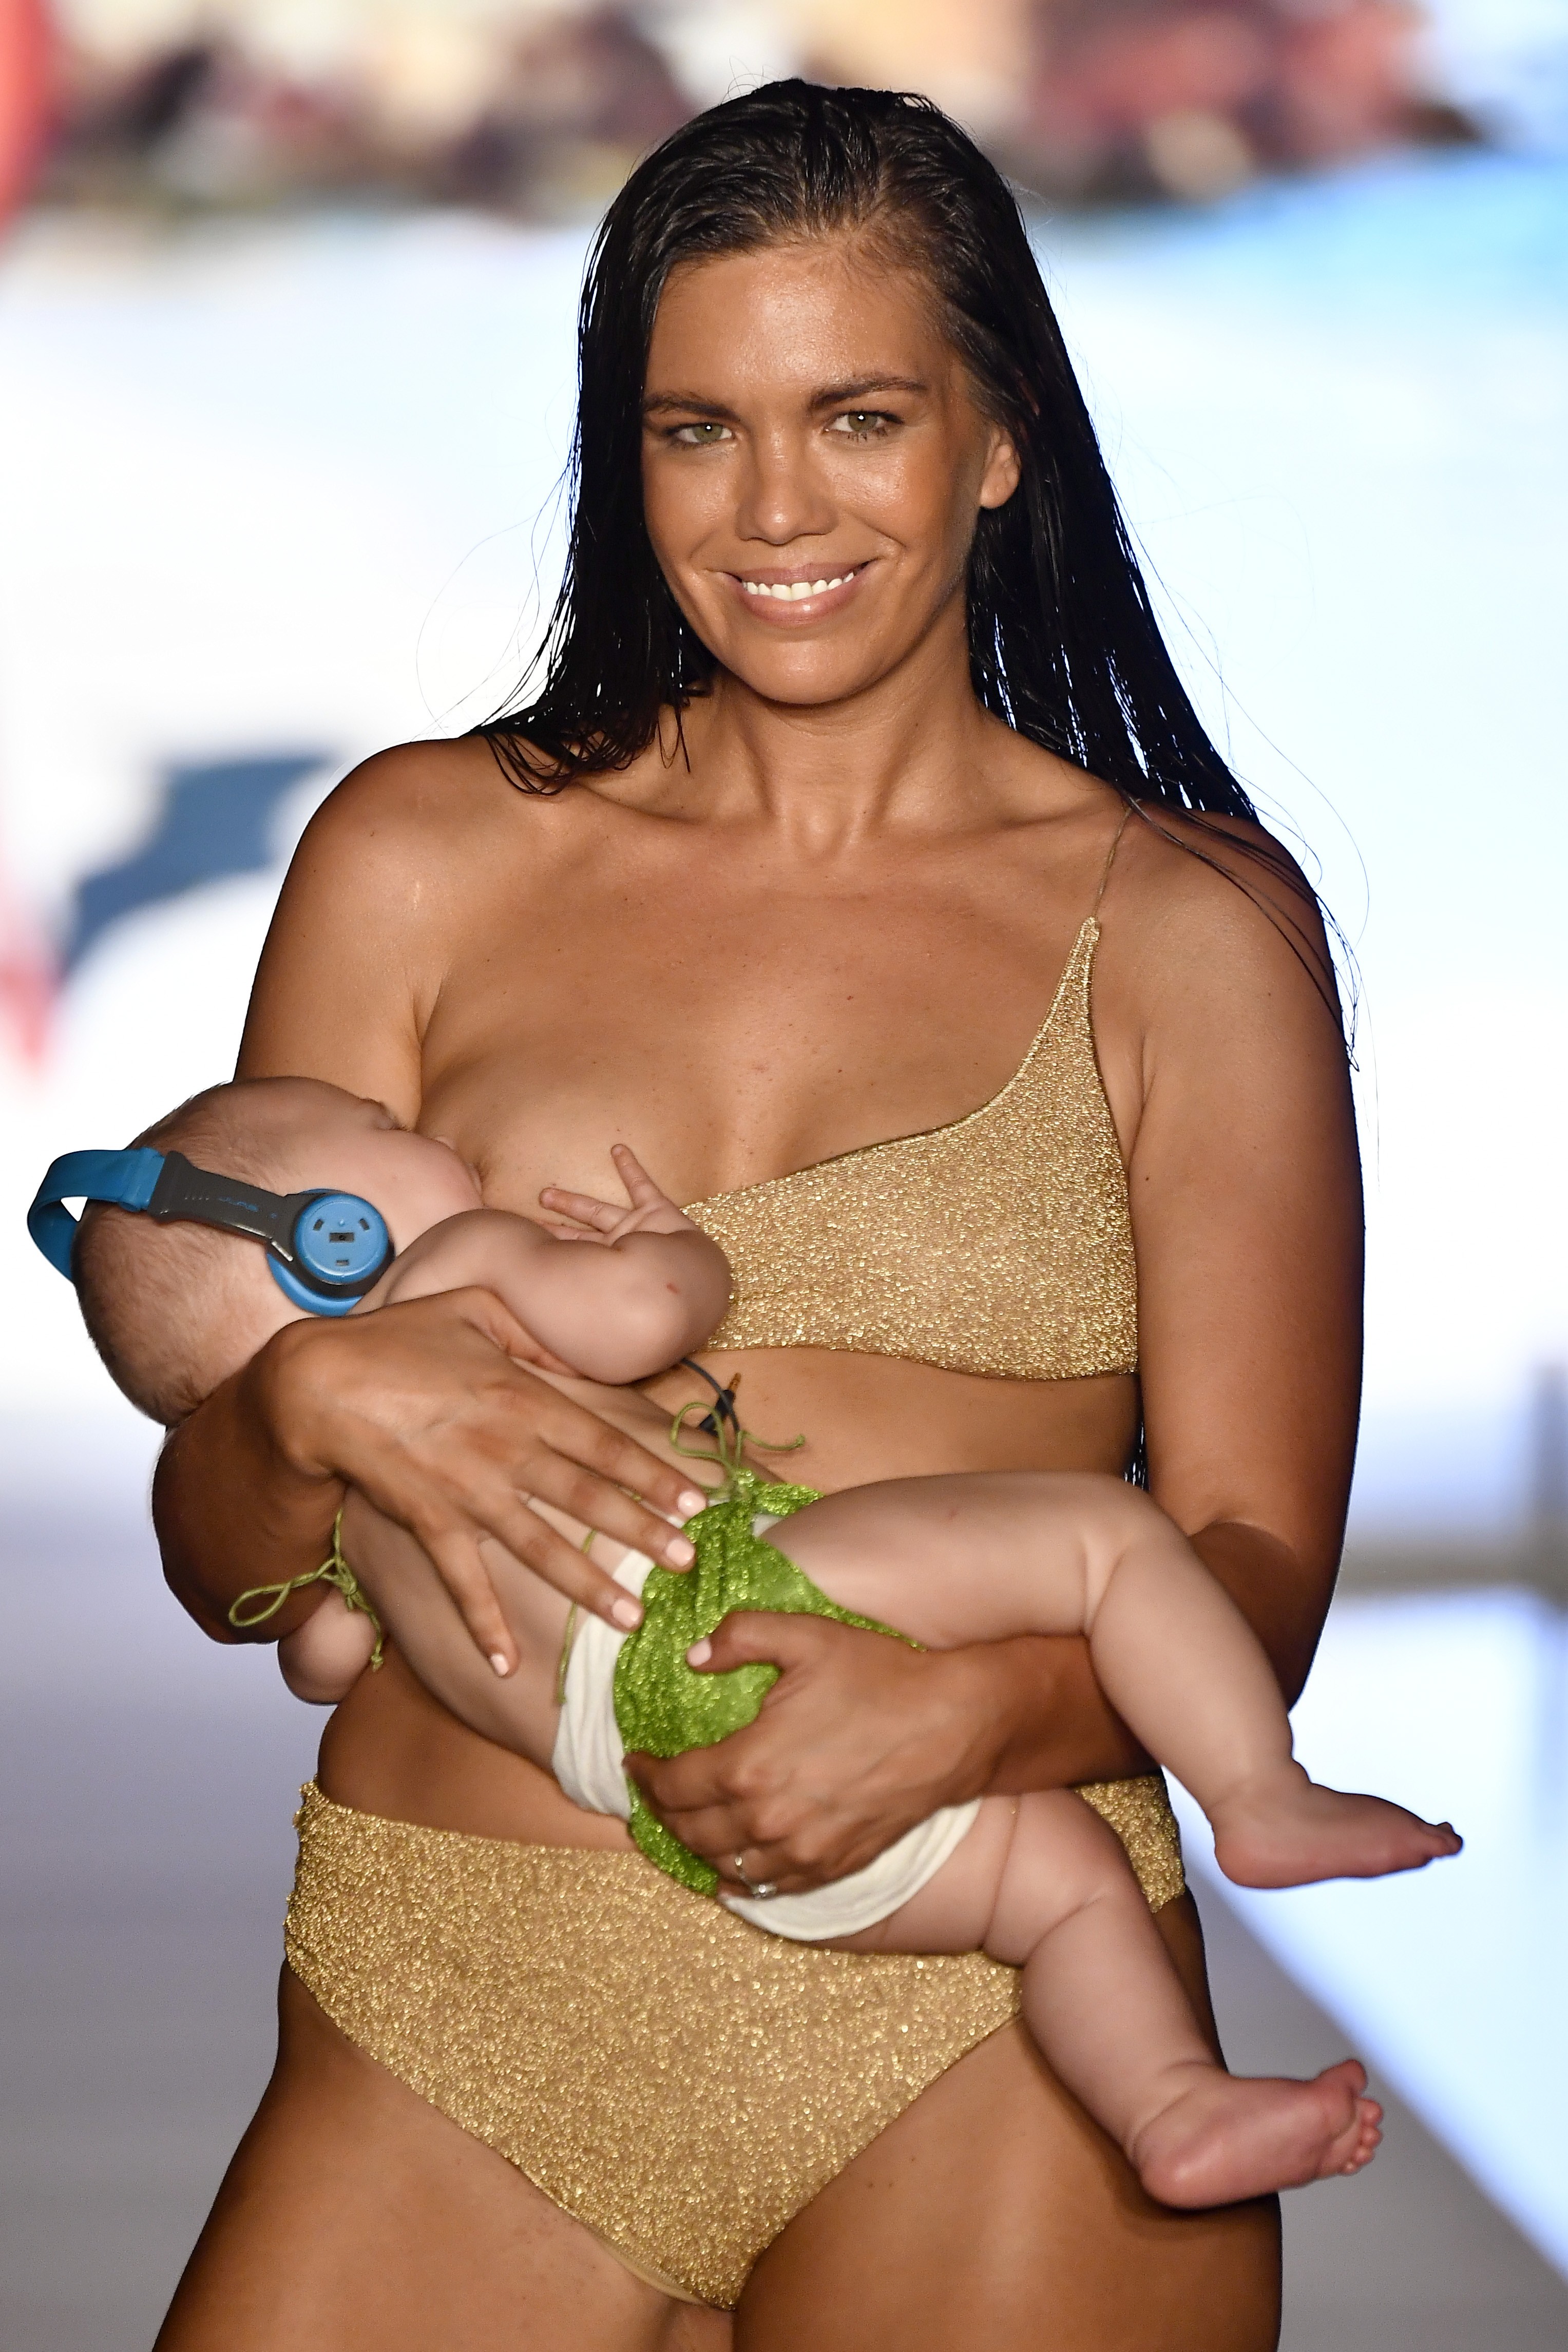 A modelo Mara Martin desfilou amamentando sua filha de 5 meses (Foto: Getty Images)